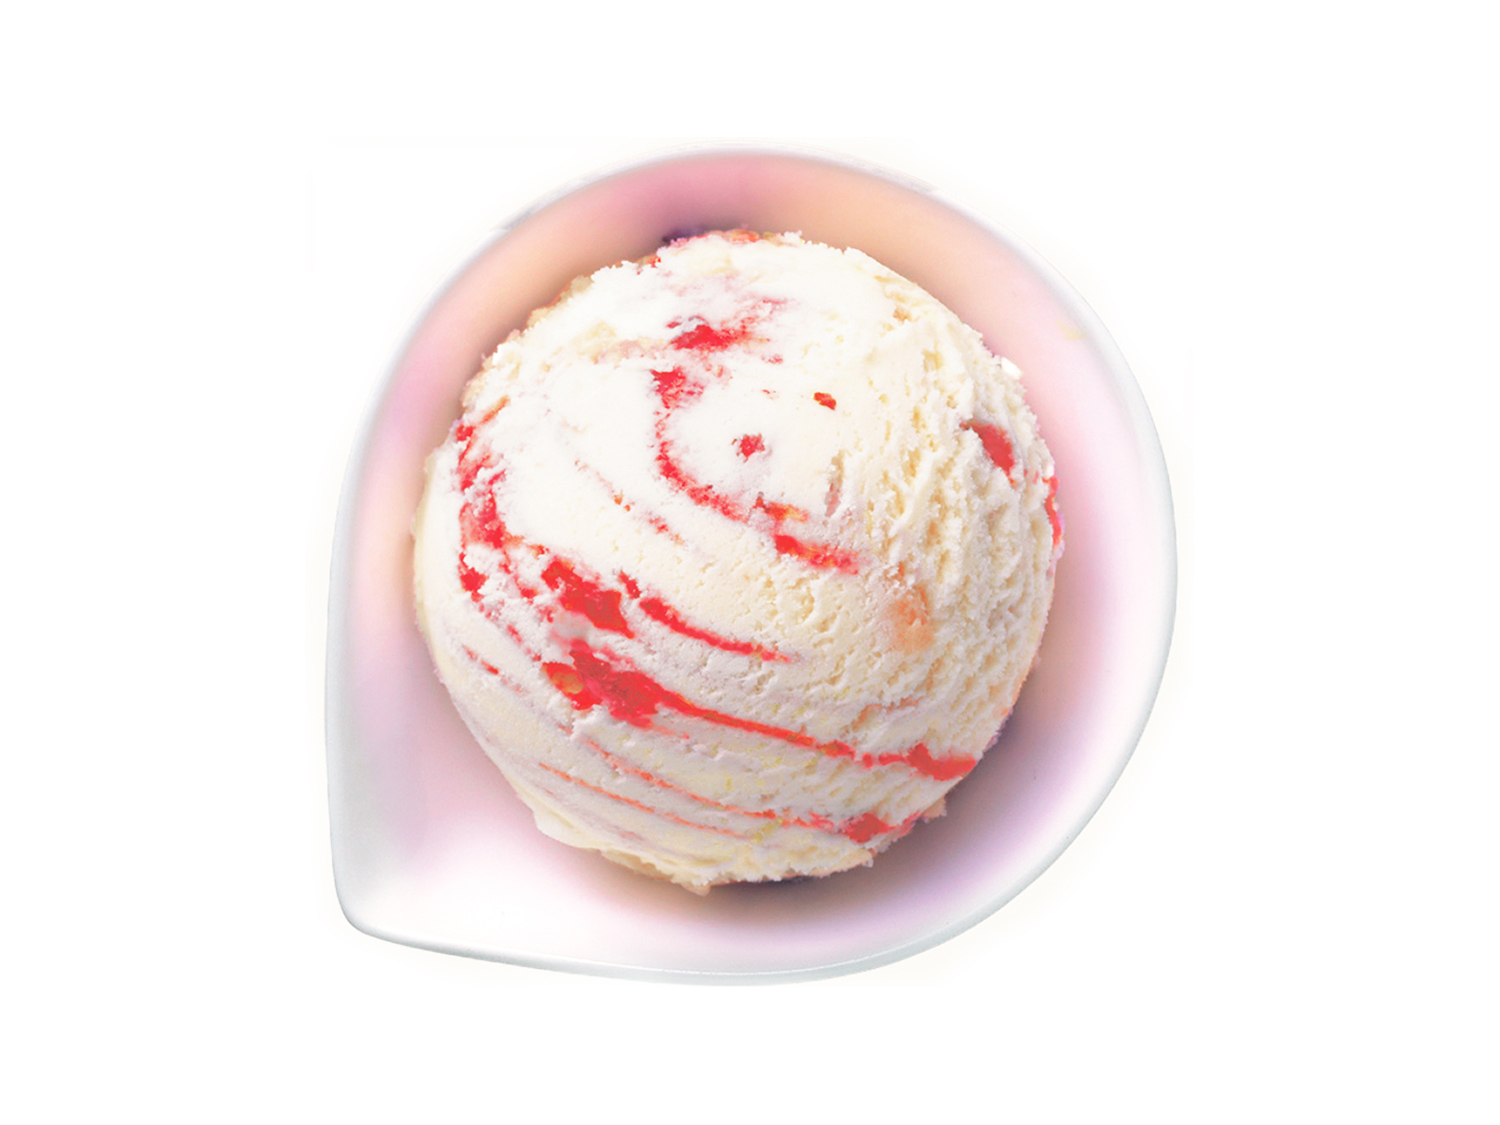 業務用アイスクリーム 業務用バルクアイス ロッテアイス バラエティ いちごのショートケーキ 通信販売 業務用アイスクリームやジェラート 冷凍フルーツなら Sweet Kiss